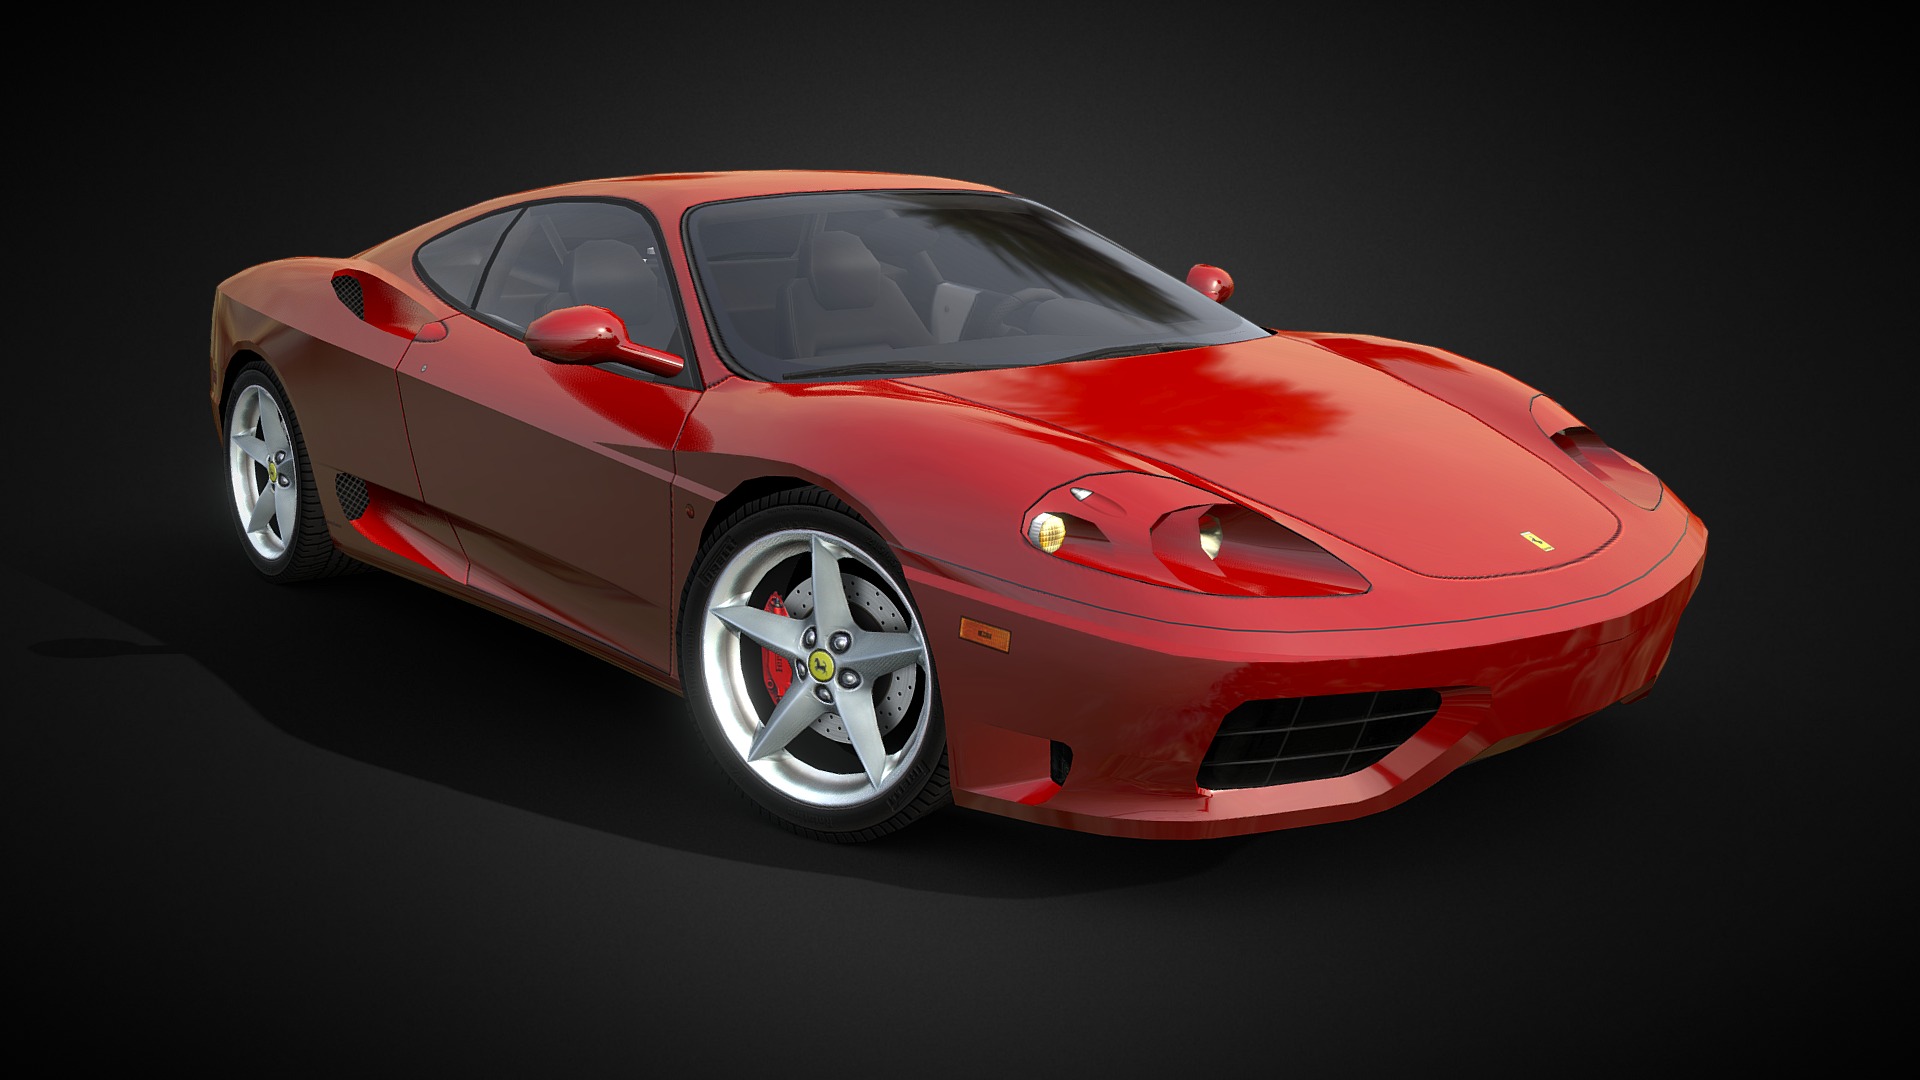 3D model Ferrari 360 Modena - This is a 3D model of the Ferrari 360 Modena. The 3D model is about a red sports car.